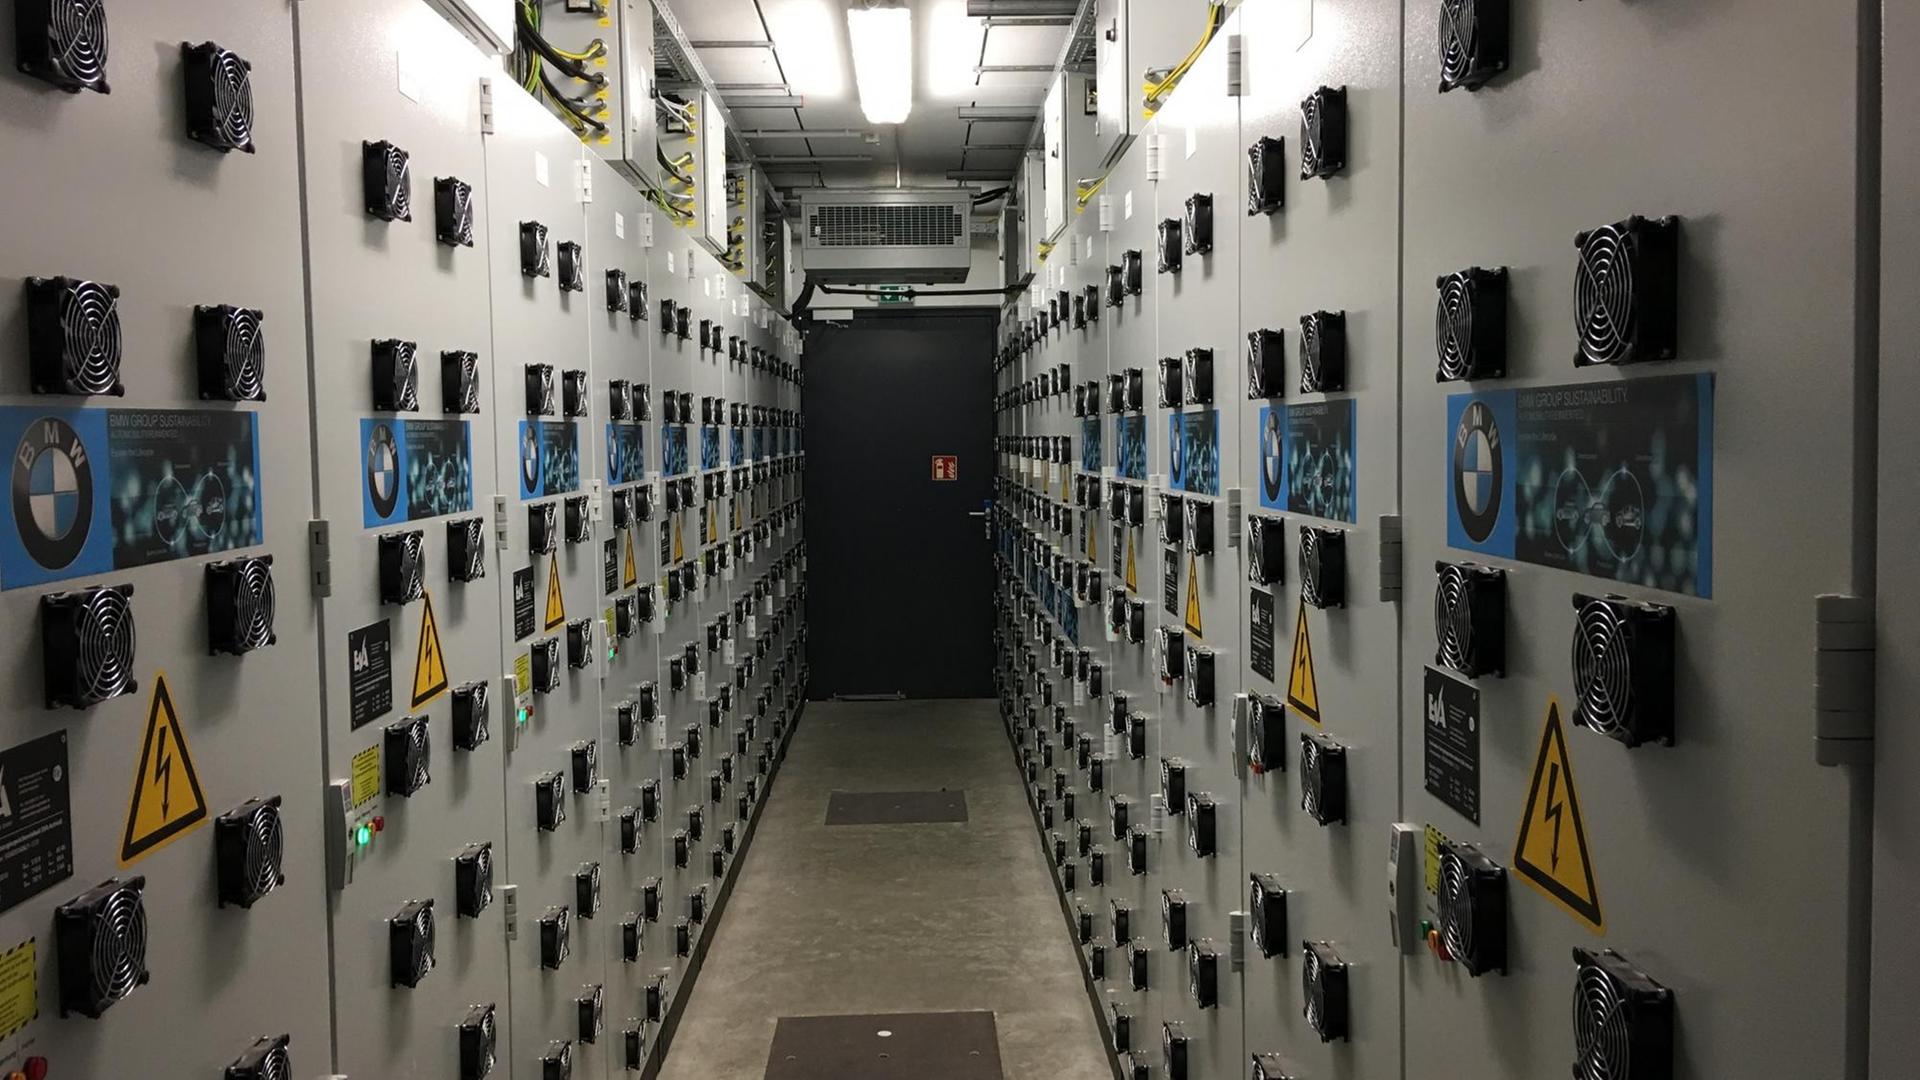 Batterieraum mit Schränken, in denen ca. 50 alten Autbatterien als Stromspeicher dienen